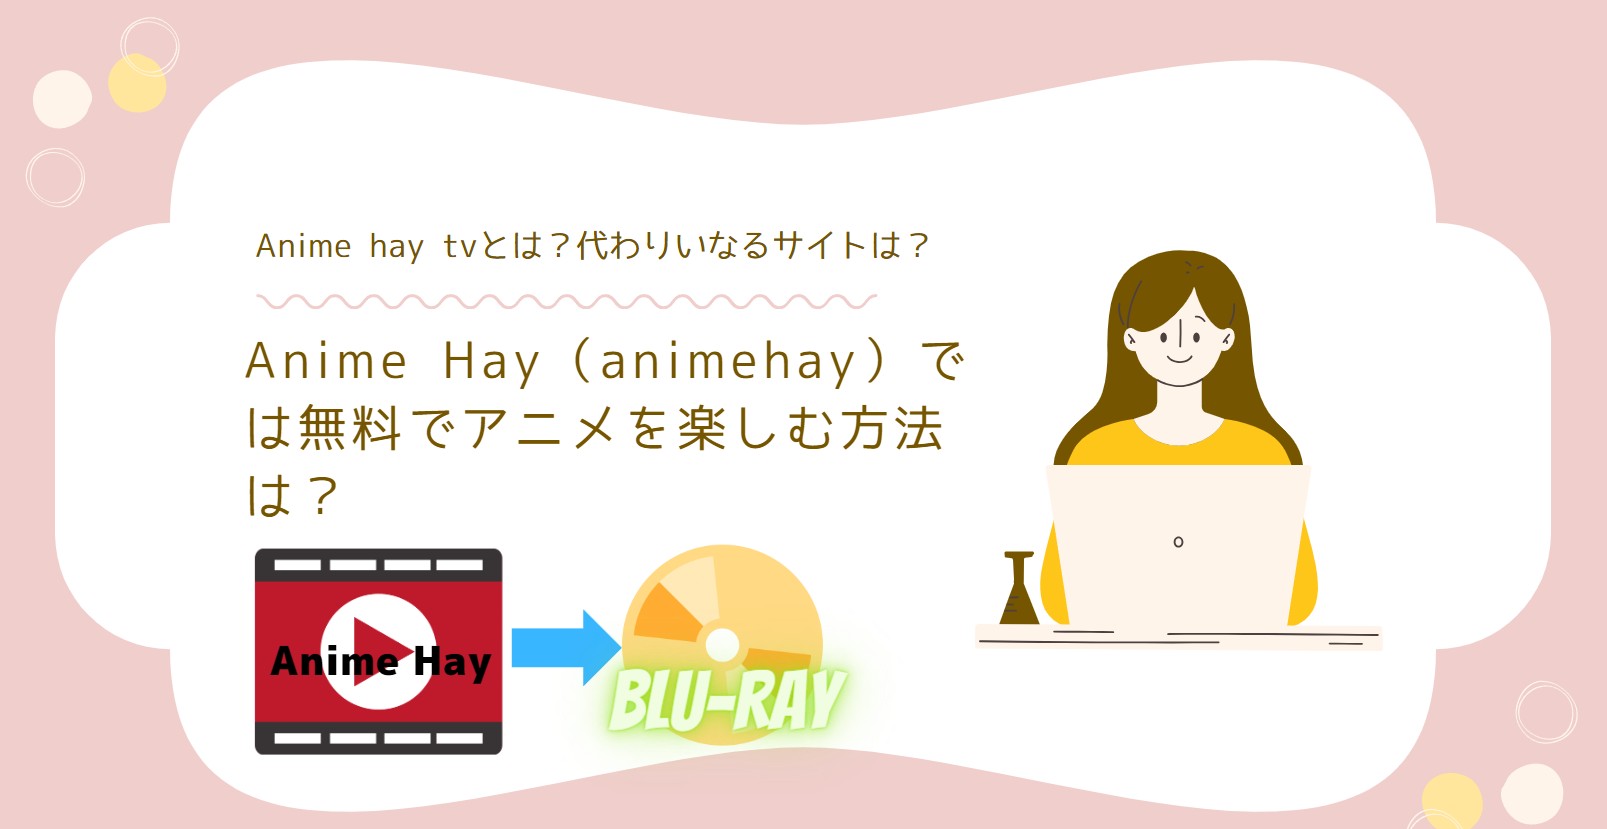 Anime Hay（animehay）では無料でアニメを楽しむ方法は？Anime hay tvとは？代わりいなるサイトは？